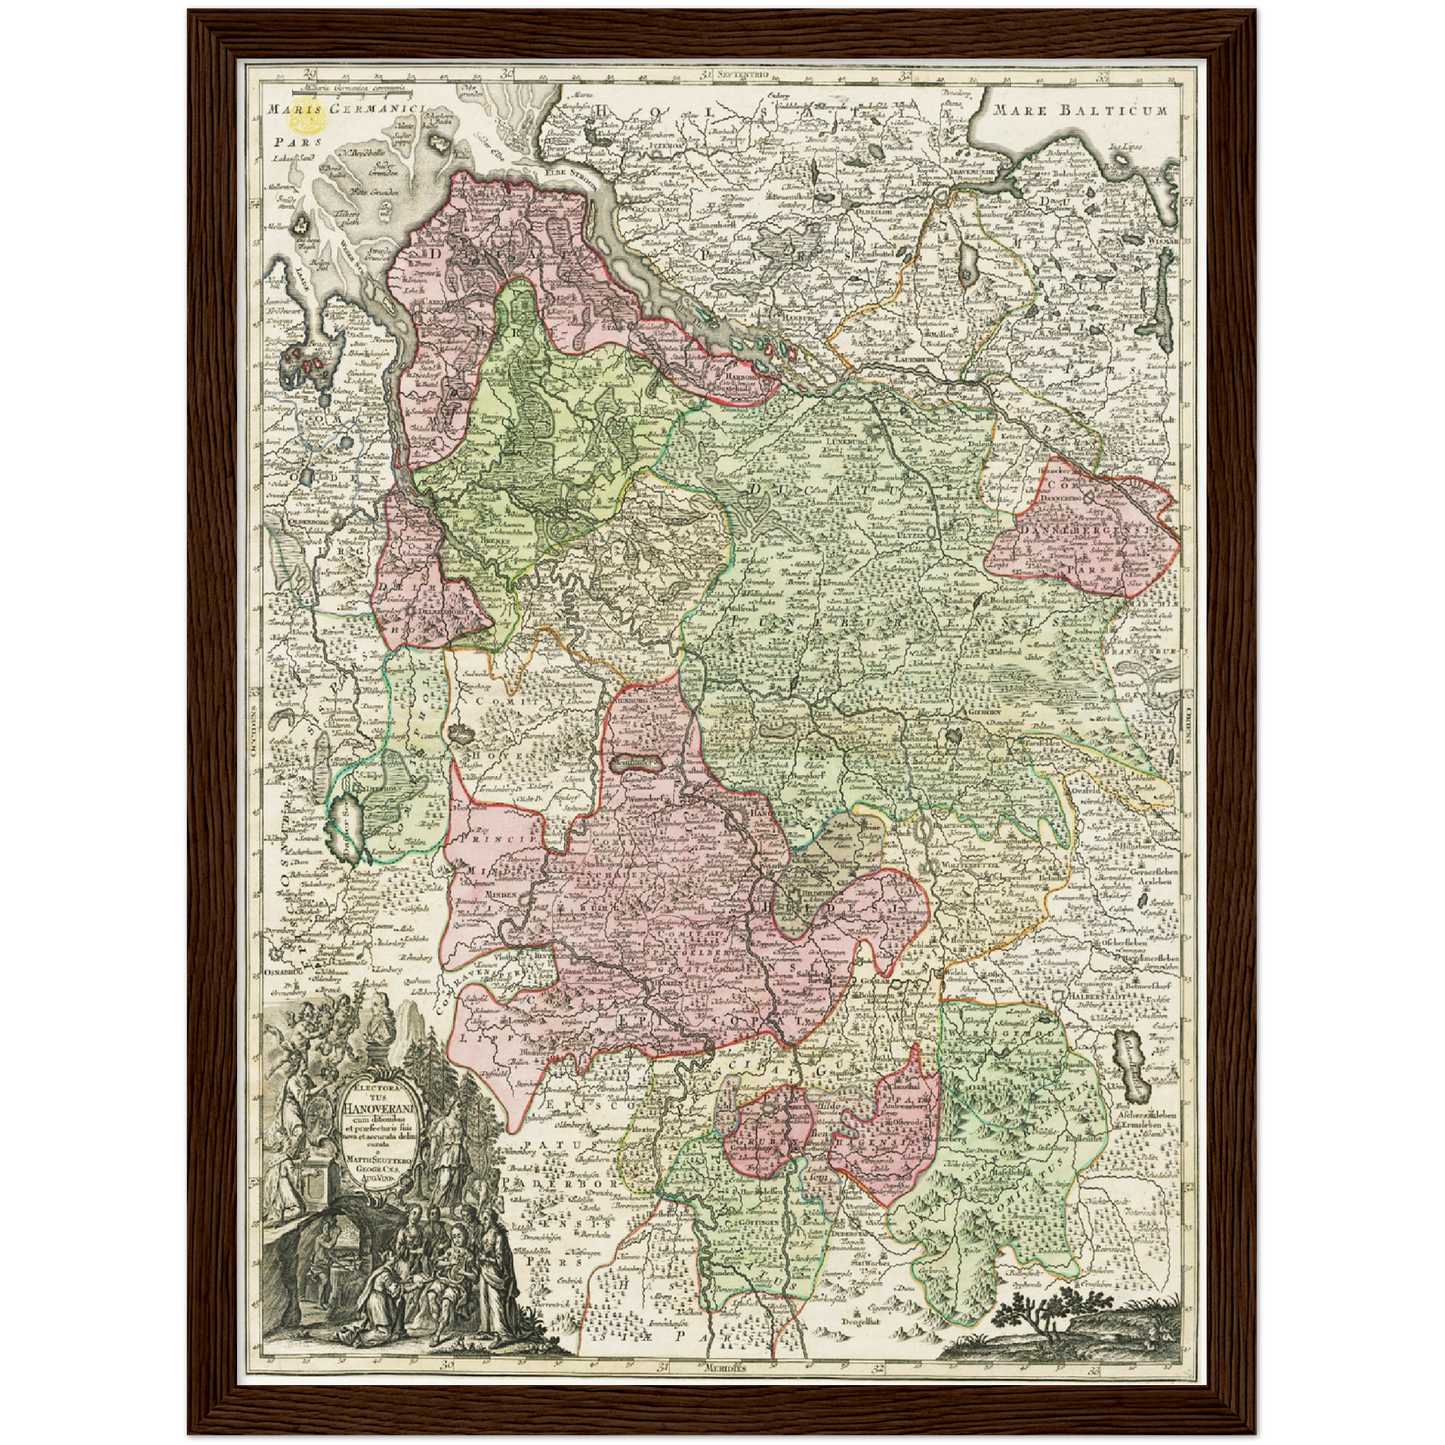 Historische Landkarte Hannover um 1750